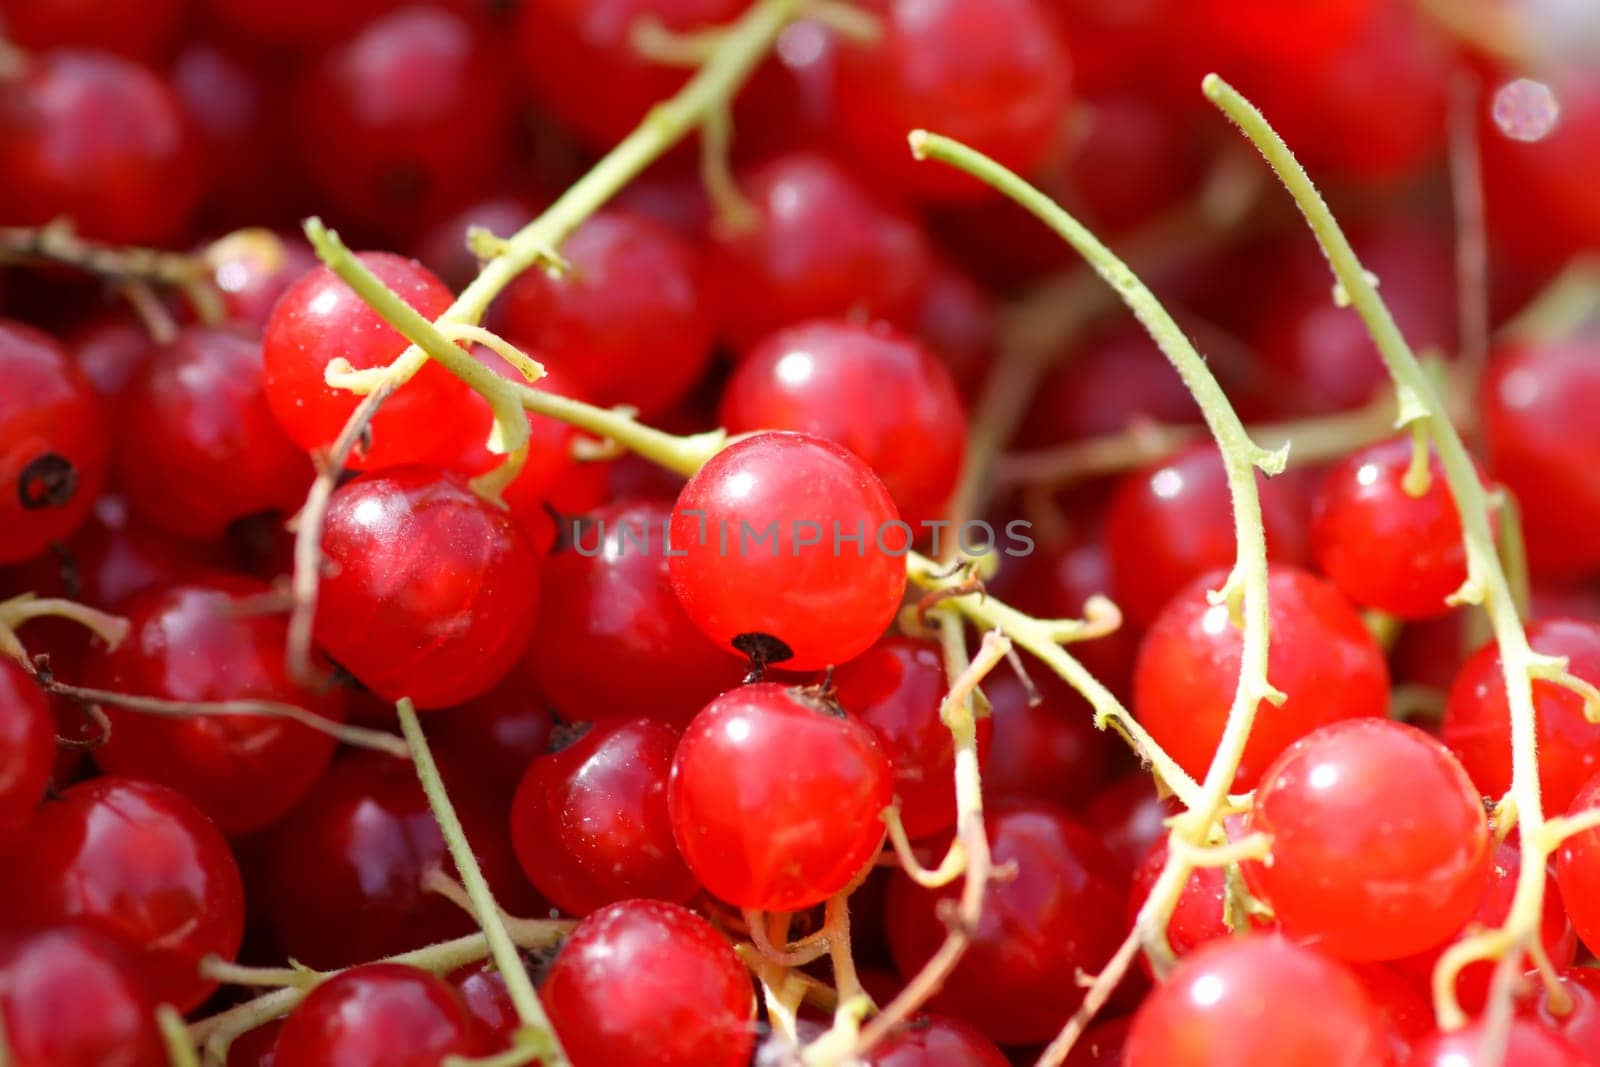 Ripe red currant berries. Healthy food ingredients.